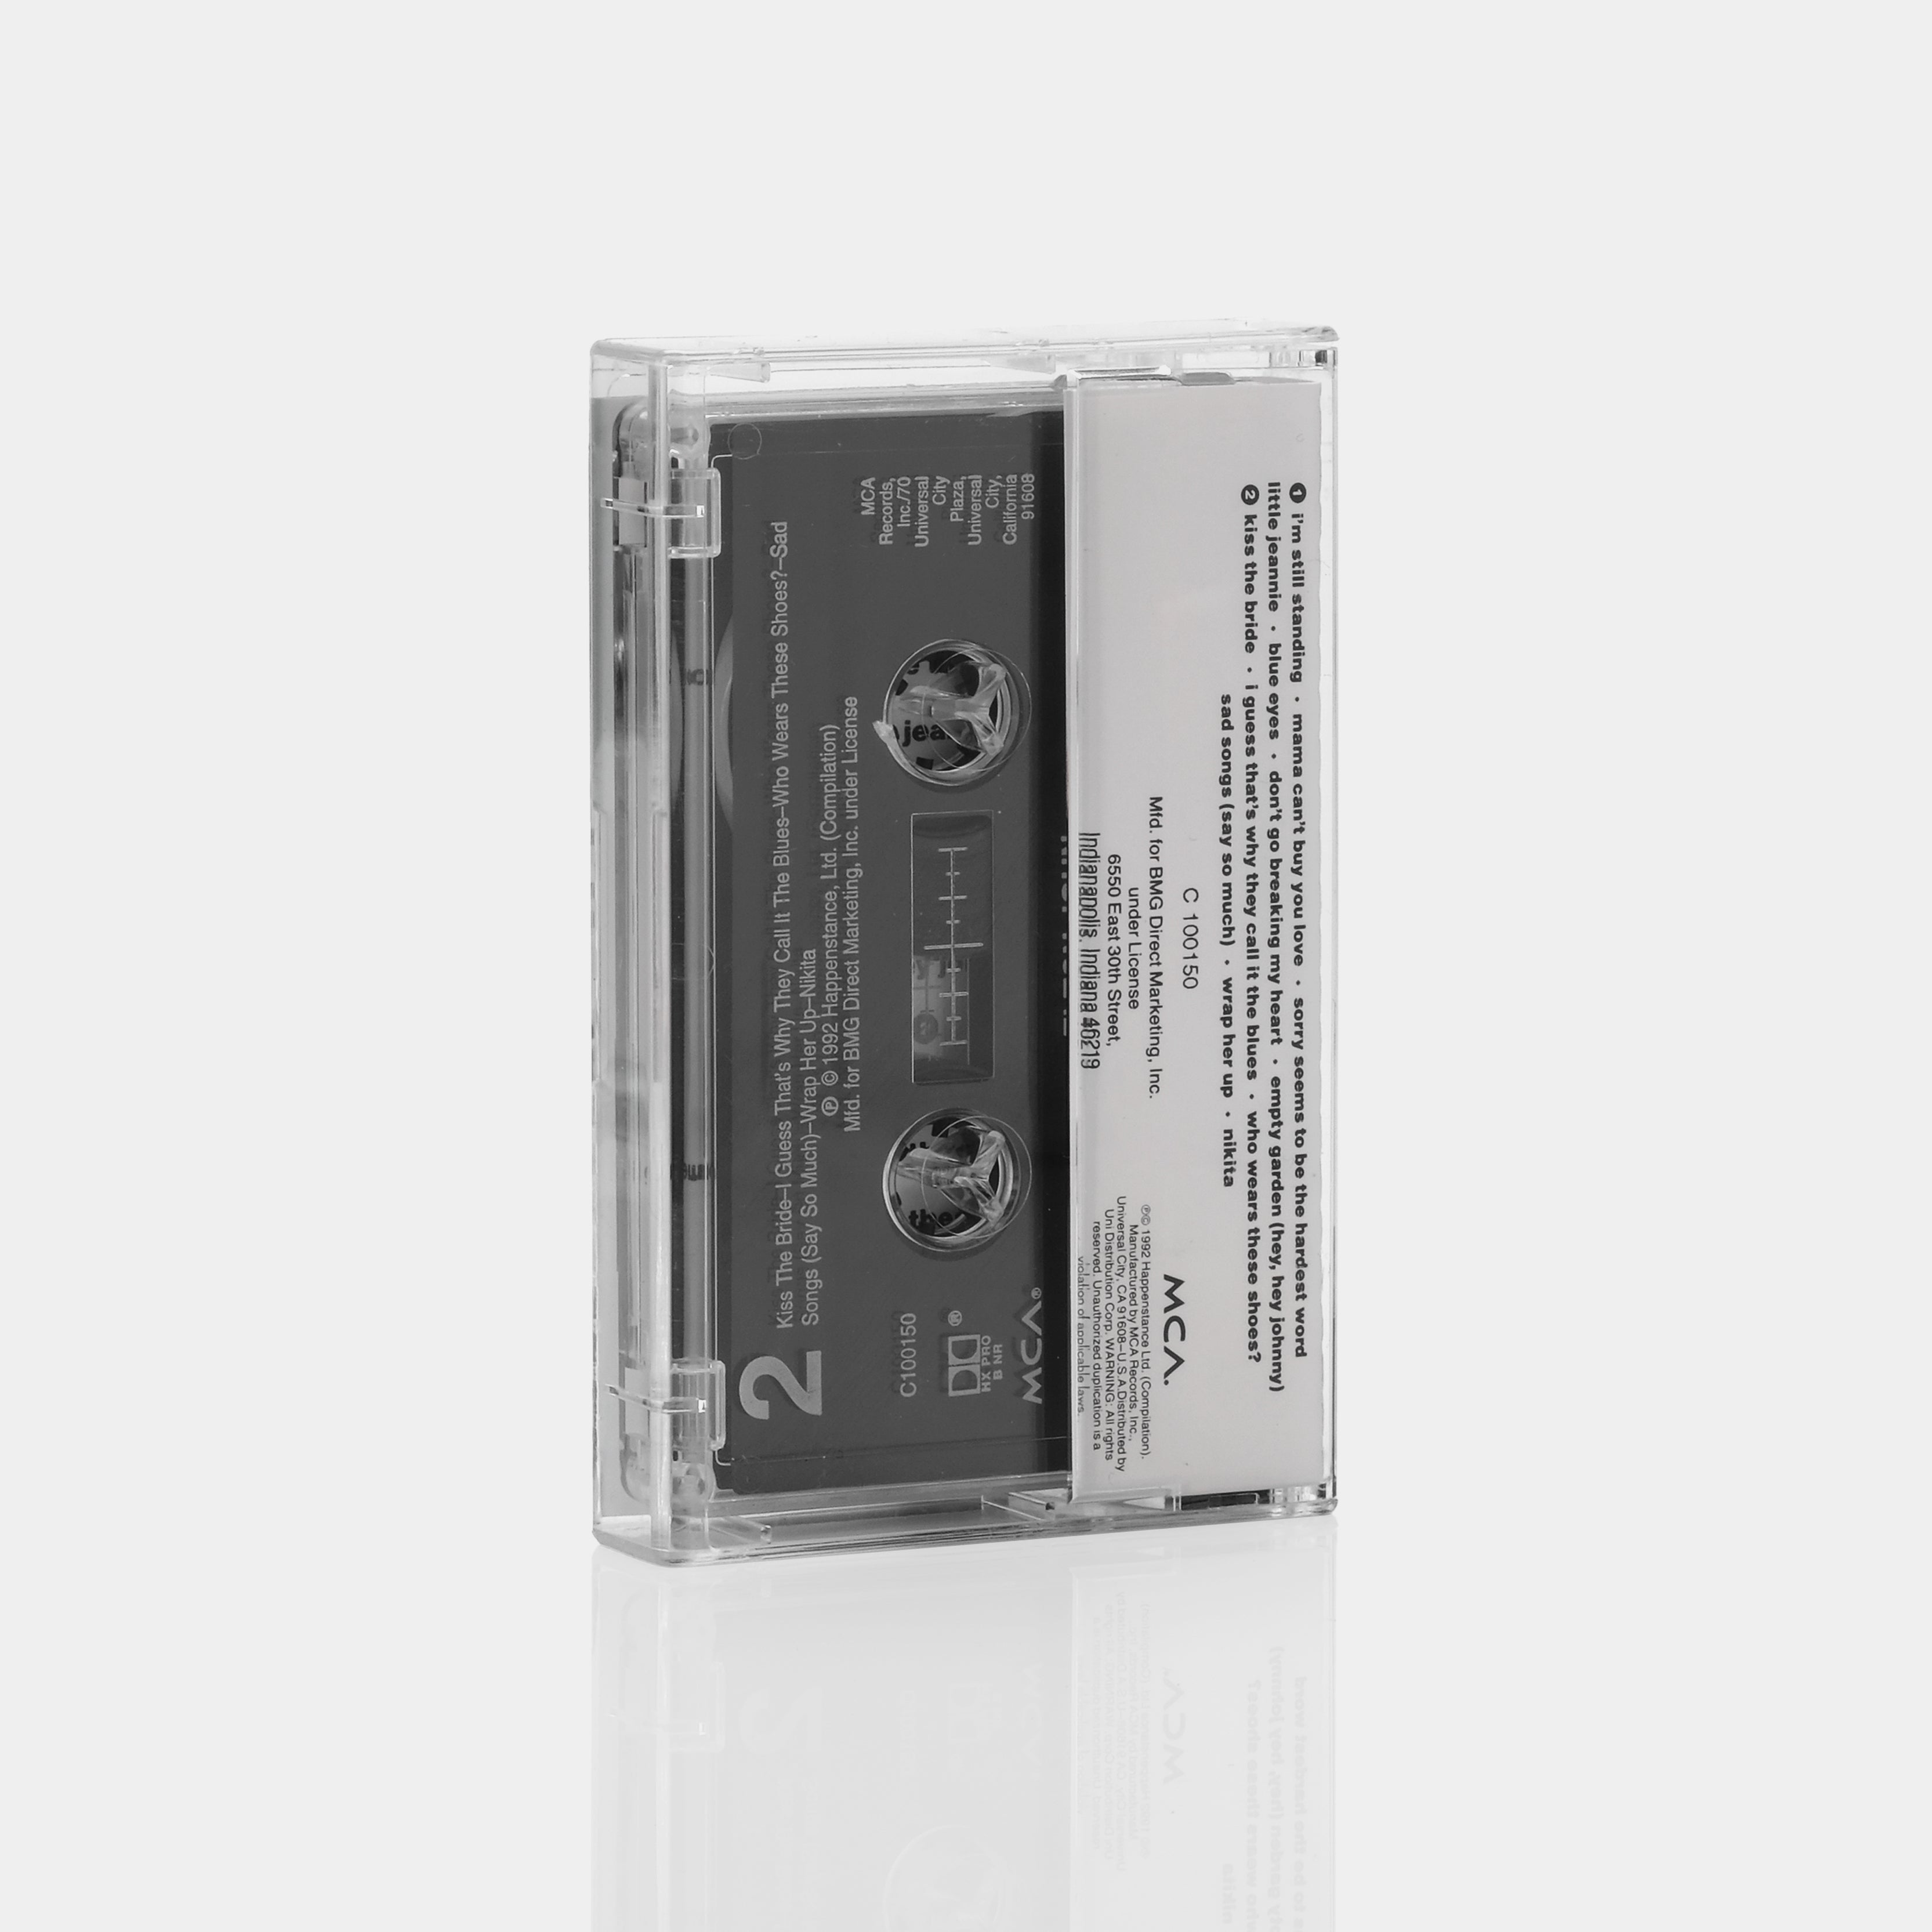 Elton John - Greatest Hits 1976-1986 Cassette Tape